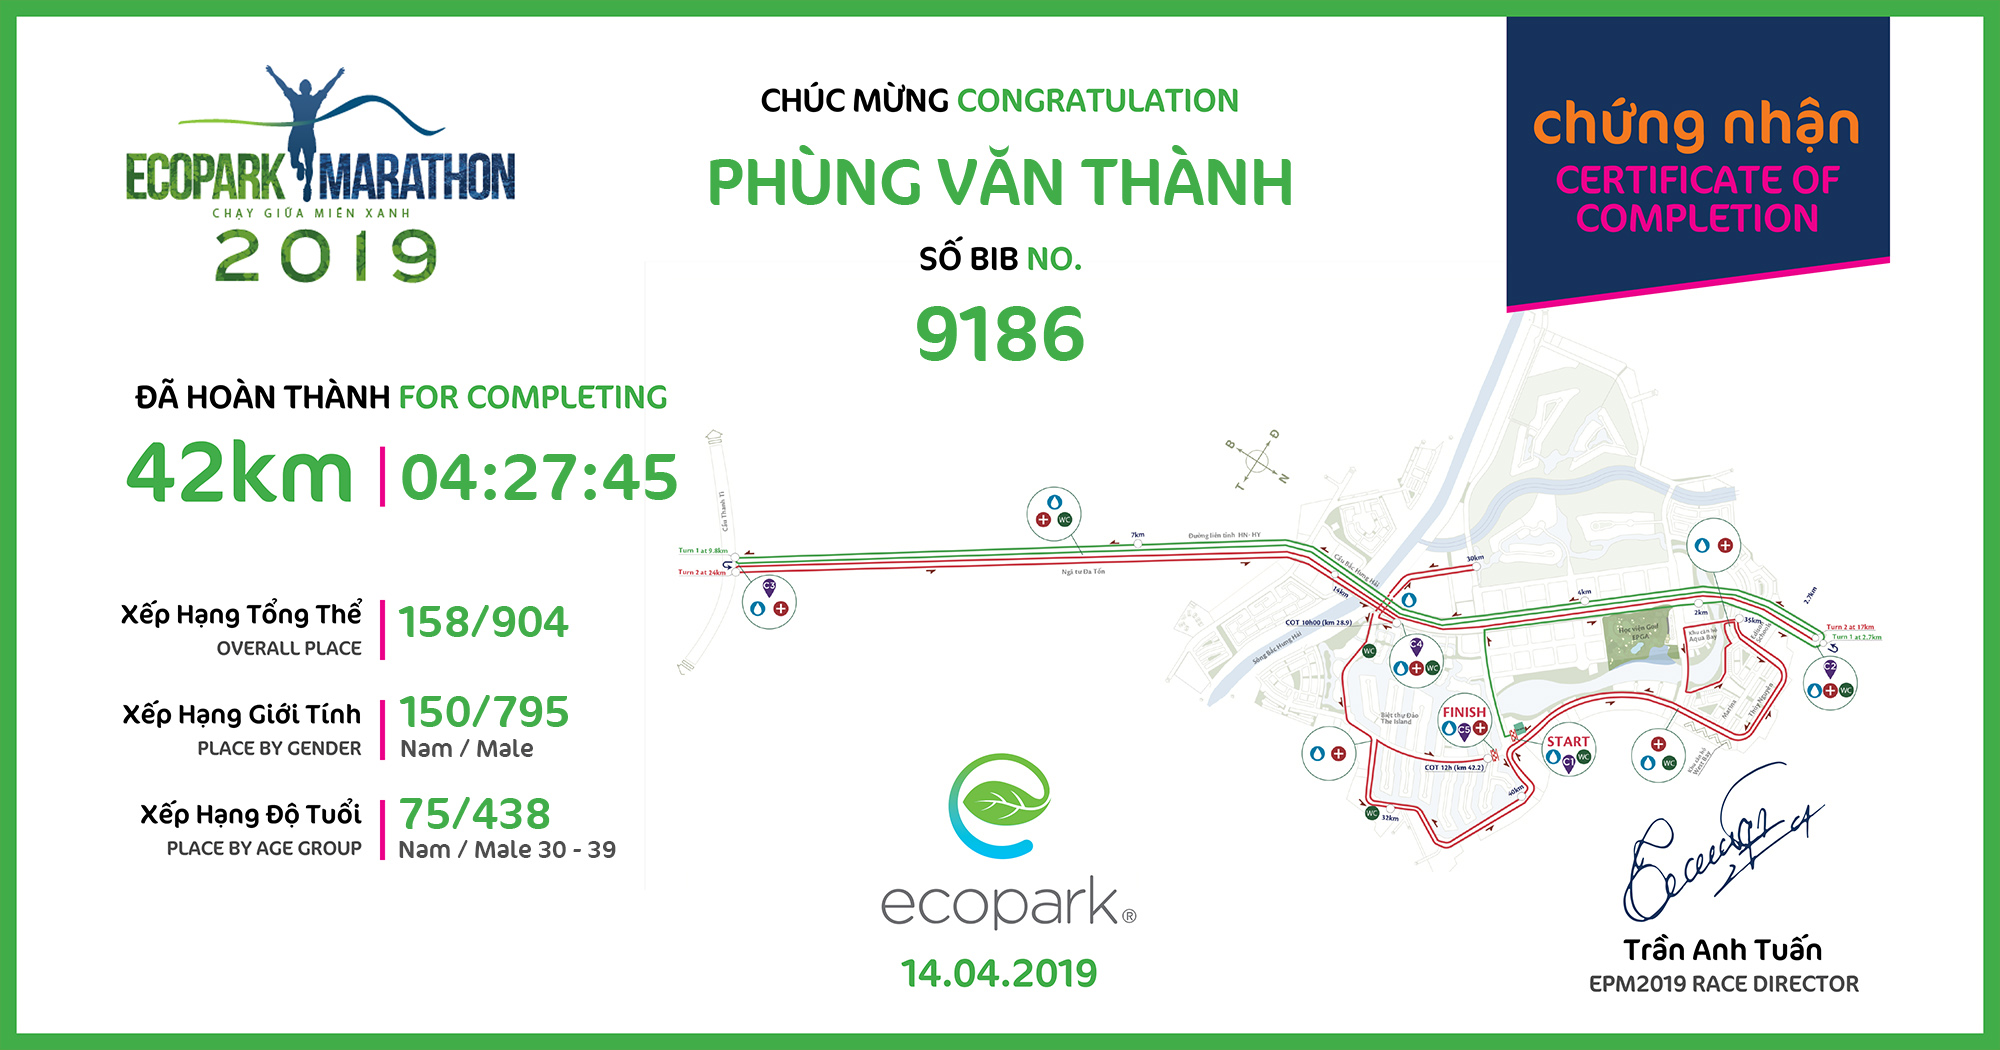 9186 - Phùng Văn Thành